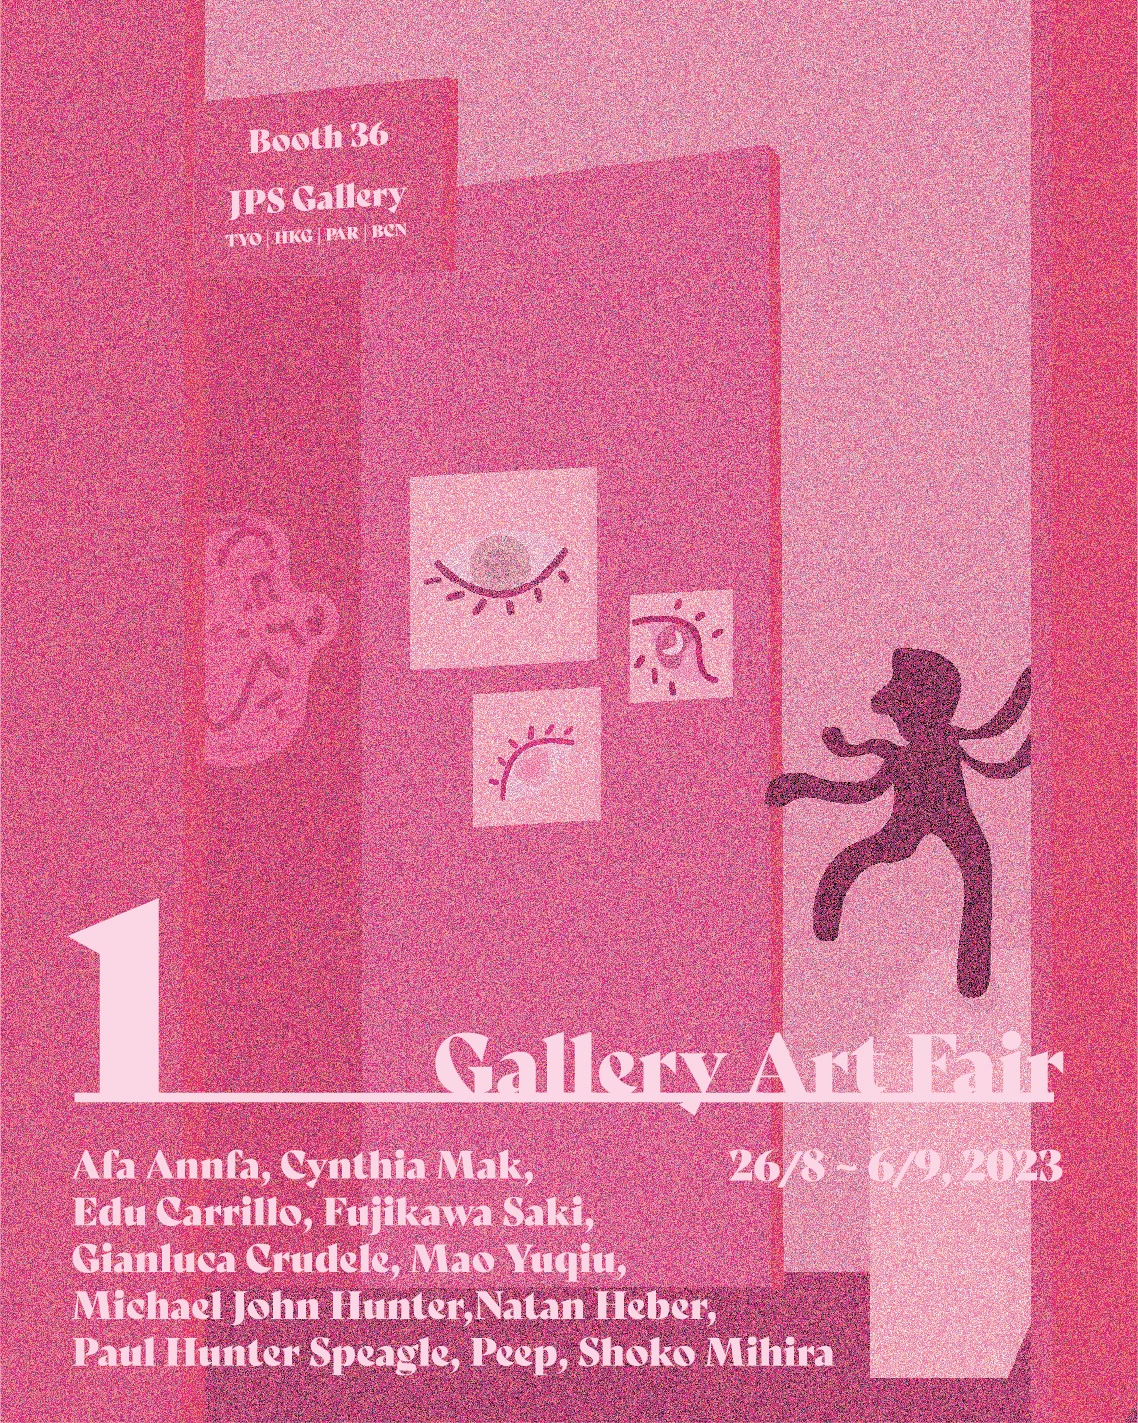 グループ展「1 Gallery Art Fair」